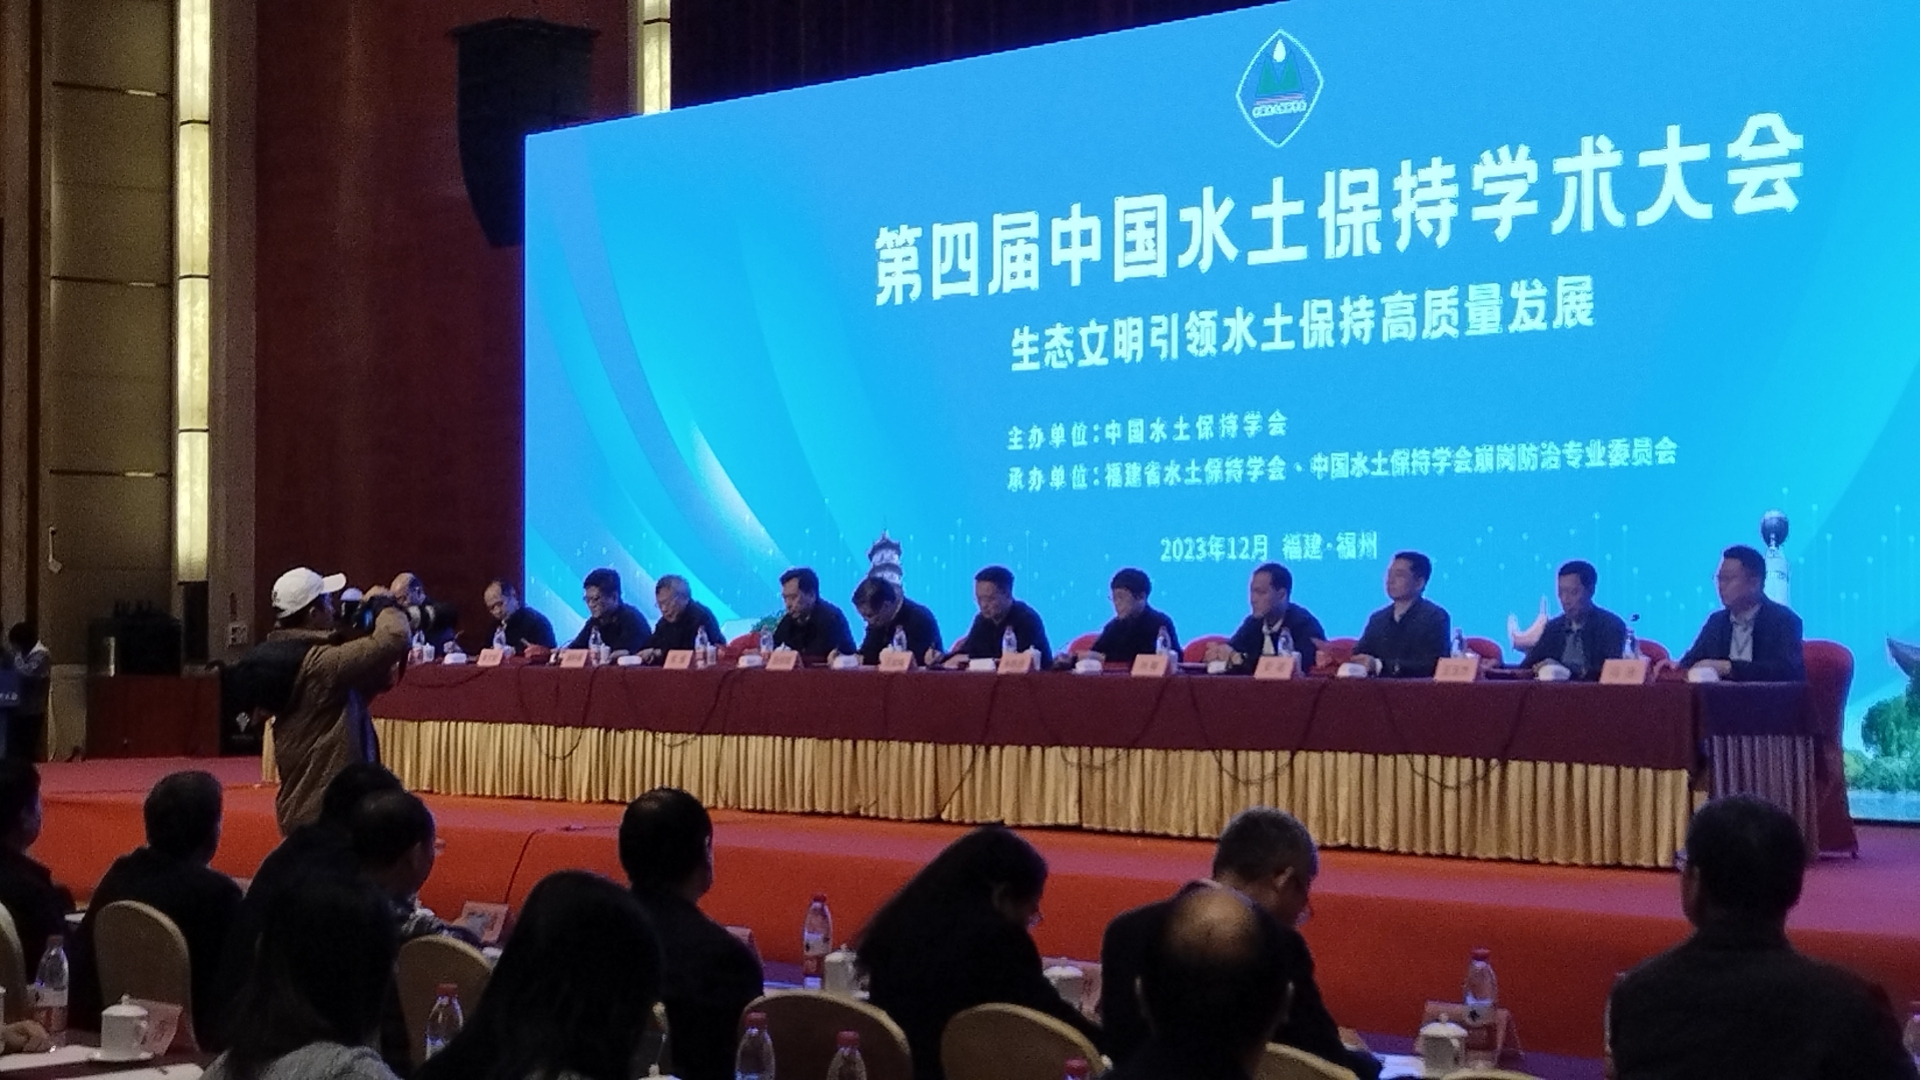 第四届中国水土保持学术大会召开一一南林电子于会作大型蒸渗仪技术汇报